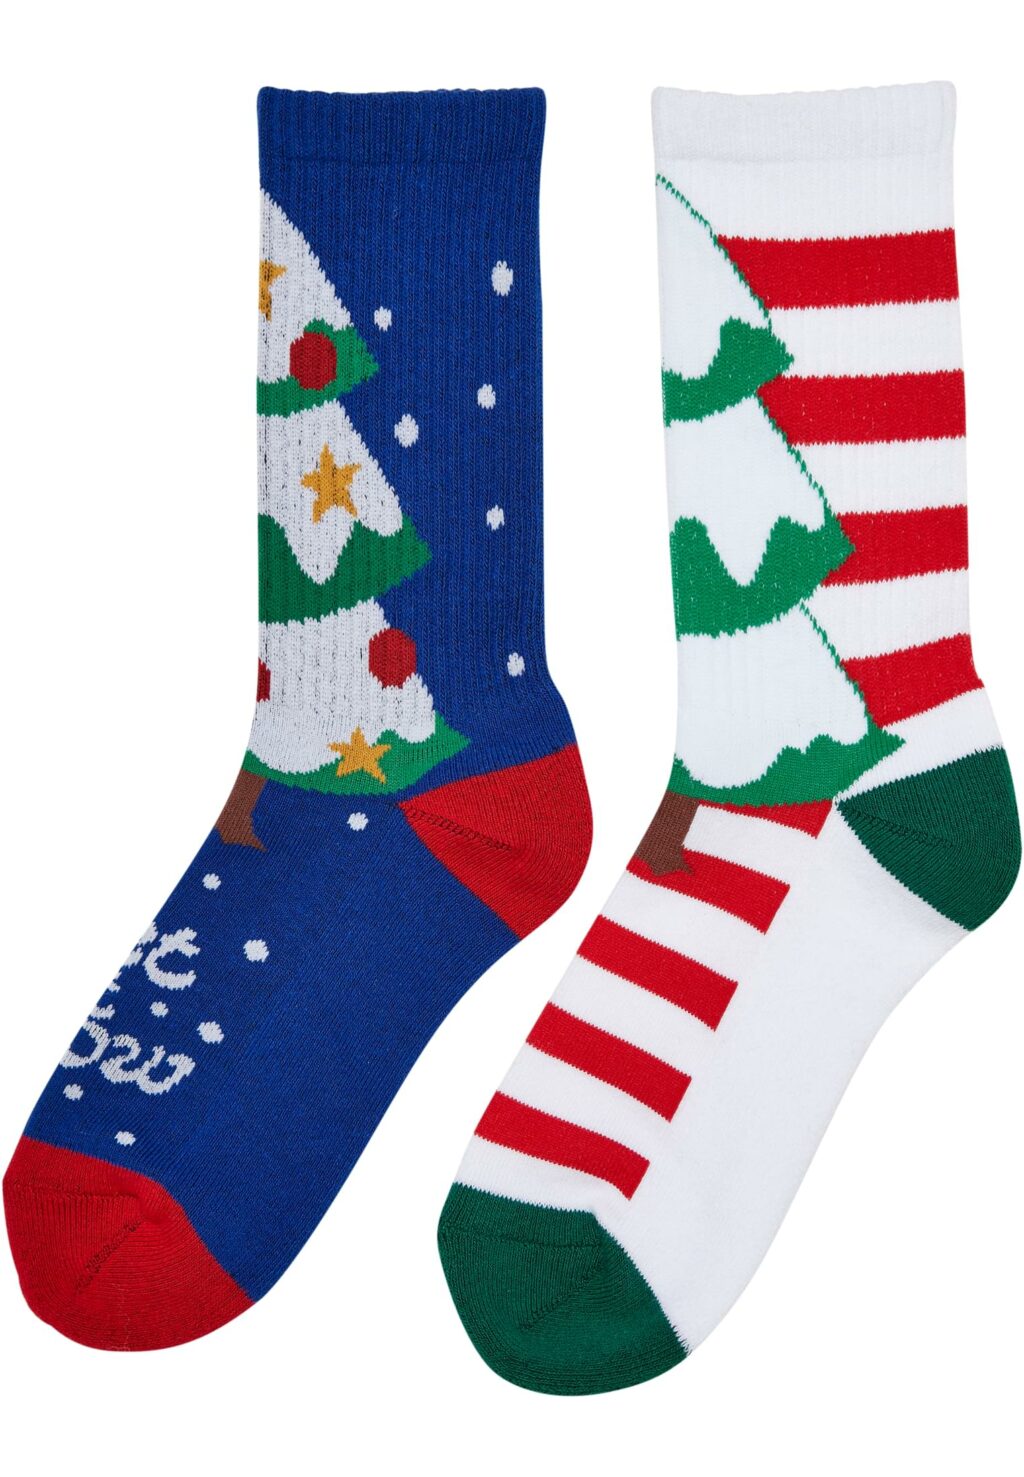 Fancy X-Mas Tree Socks 2-Pack multicolor TB5671